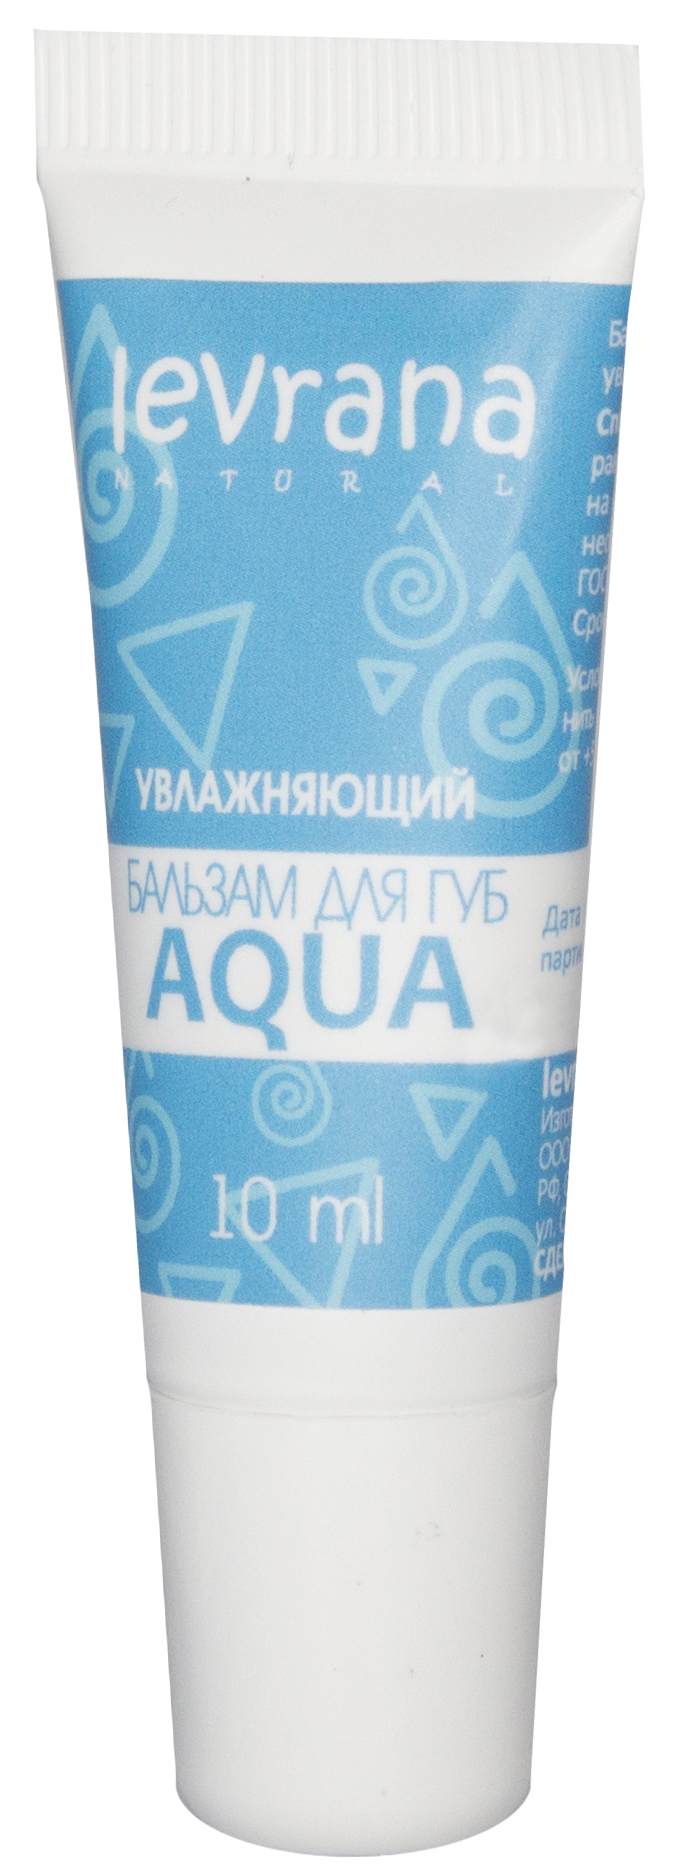 Купить Бальзам для губ Levrana Aqua Увлажняющий 10 мл